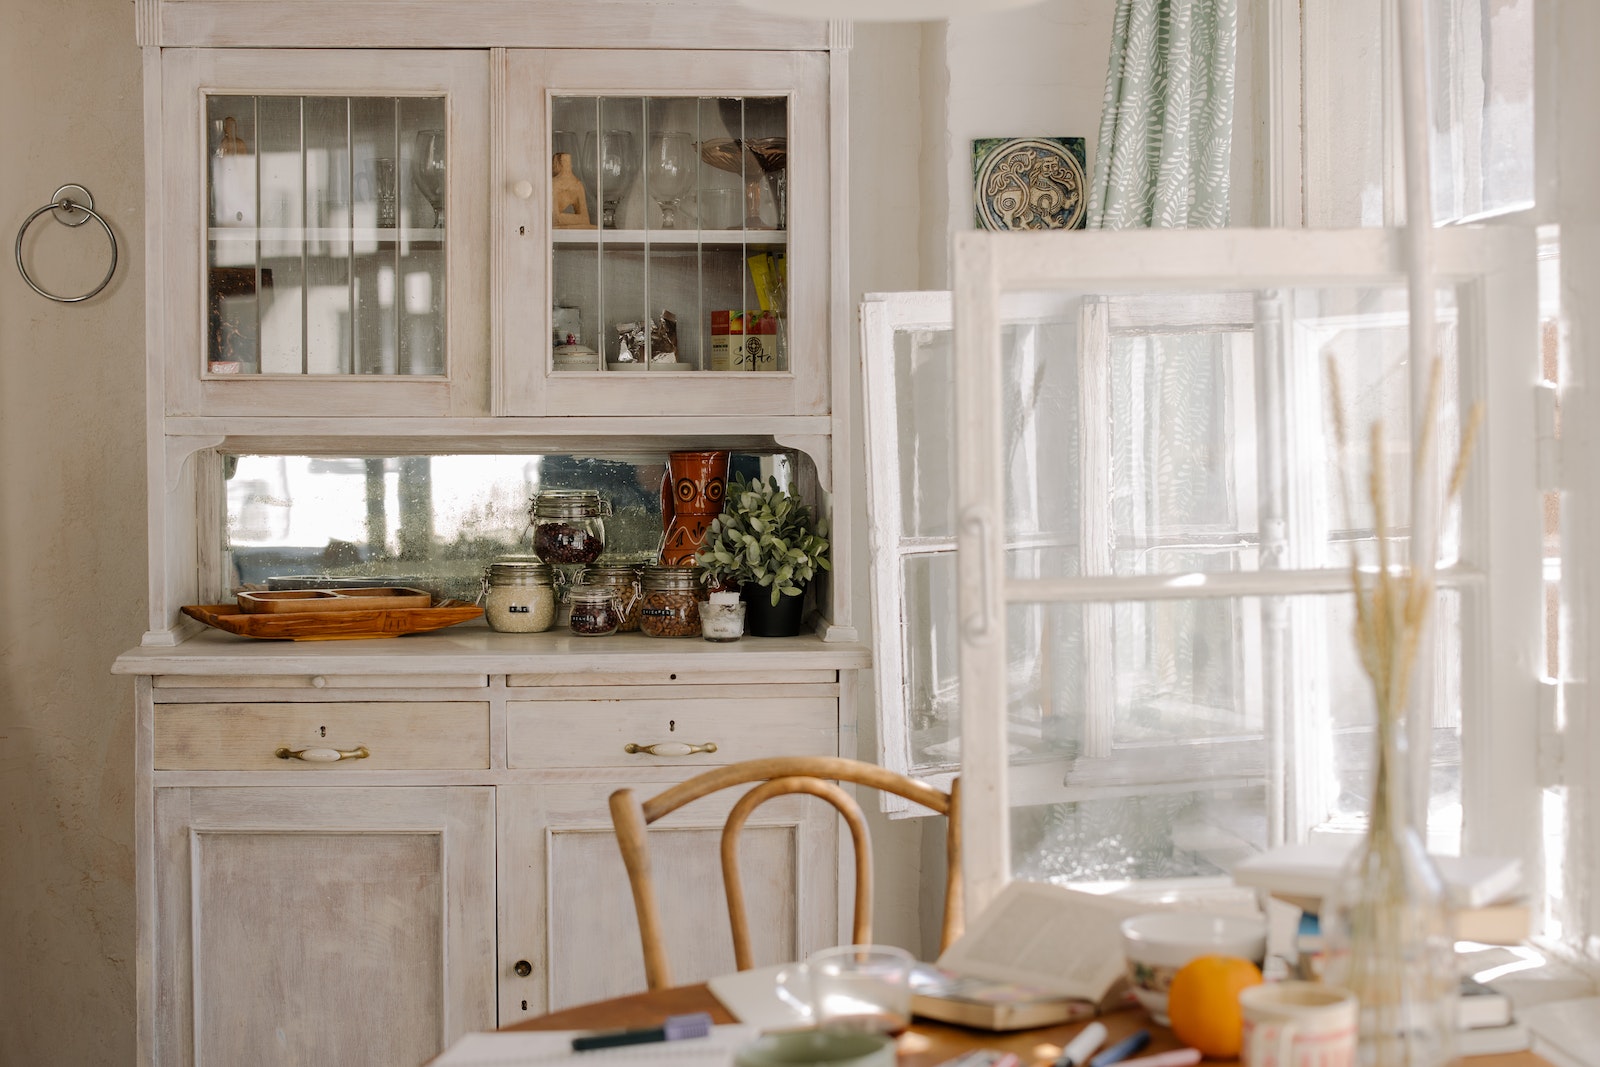 Praktyczne porady – jak zorganizować kuchenne szuflady i szafki?